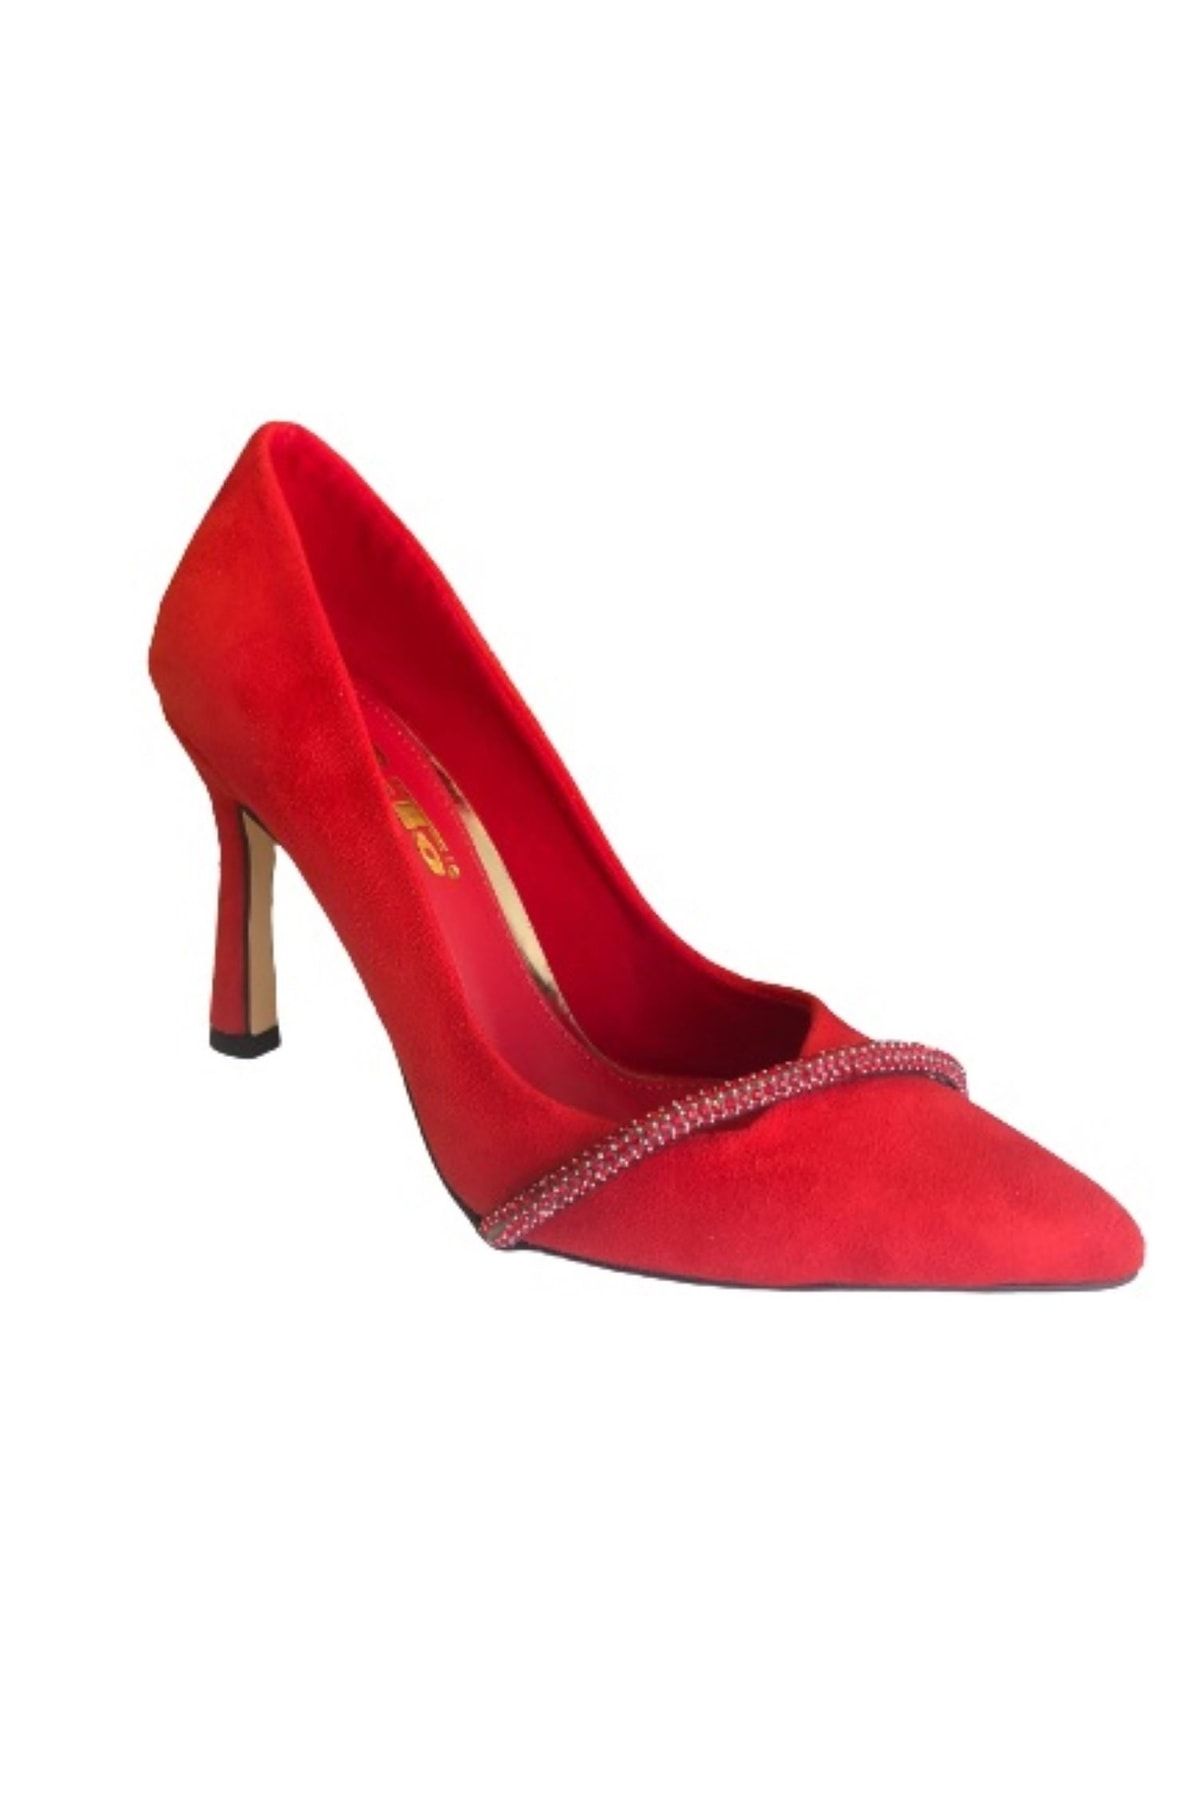 PUNTO Kırmızı Süet Bayan Abiye Ayakkabı 670320-03